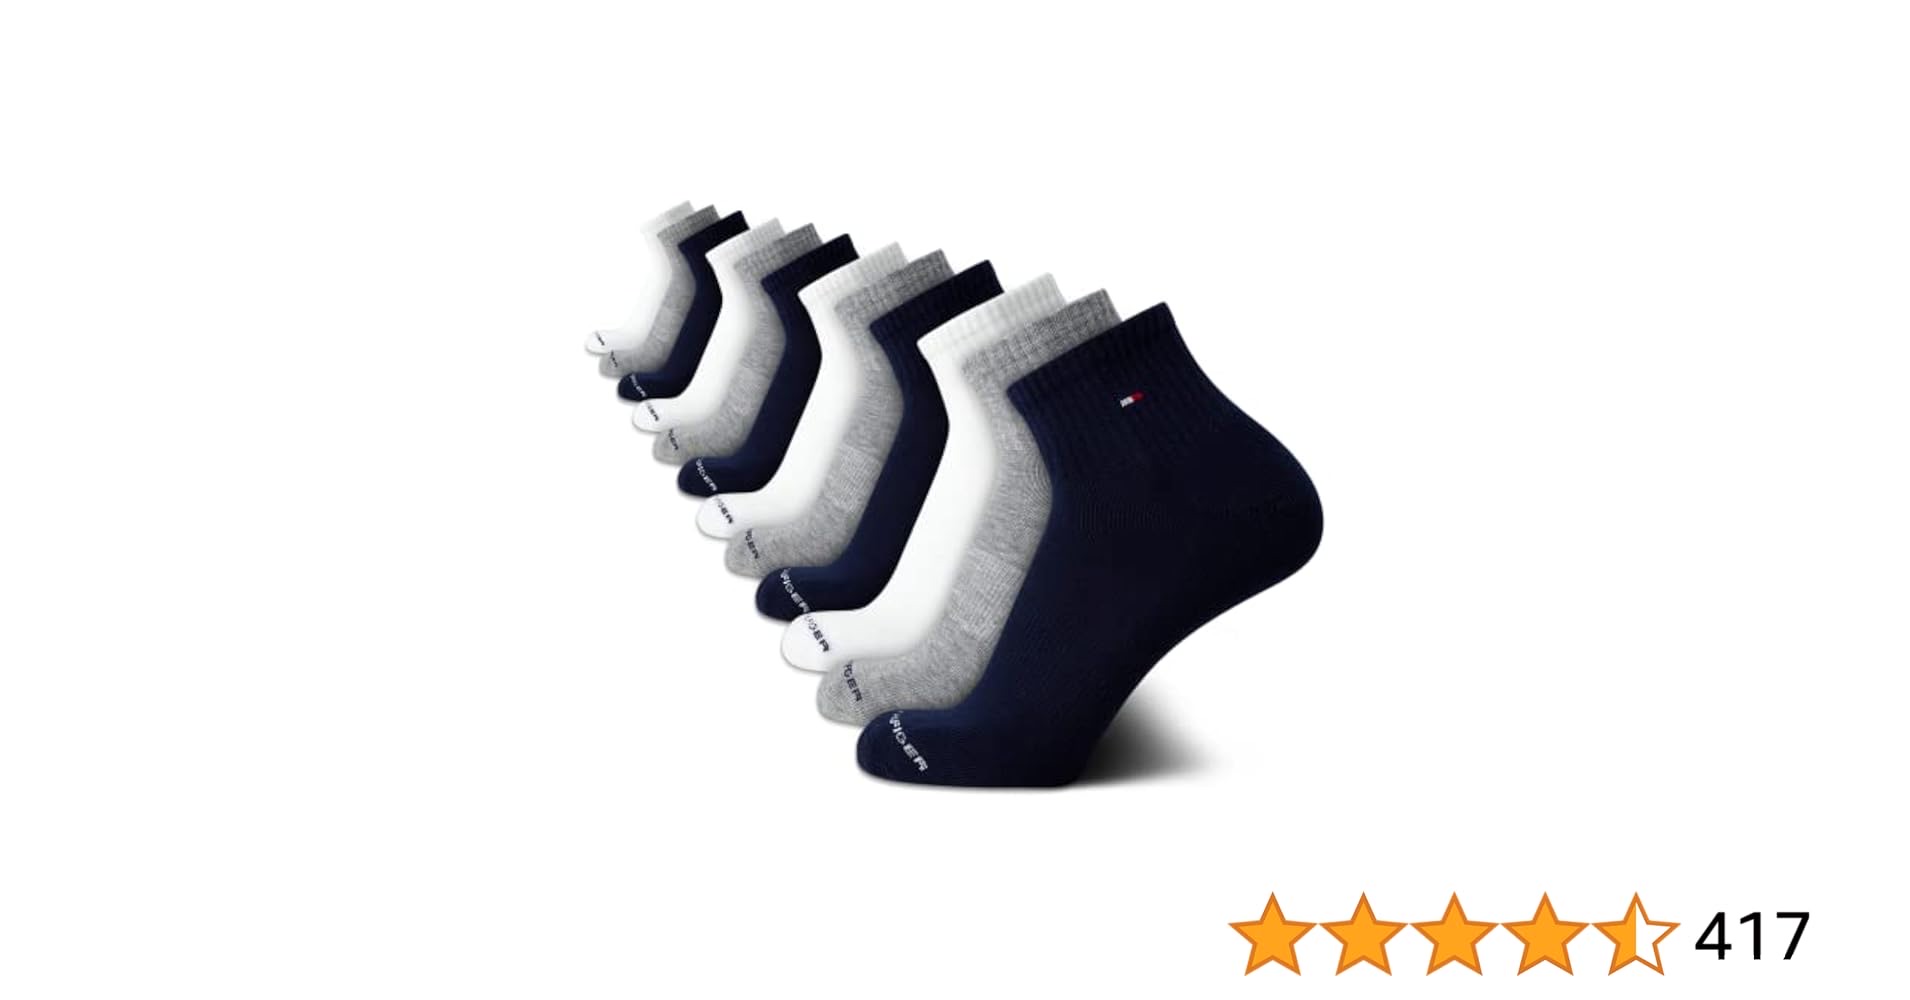 Tommy Hilfiger Men's Athletic Socks - Cushion Quarter Cut Ankle Socks (12 Pack)